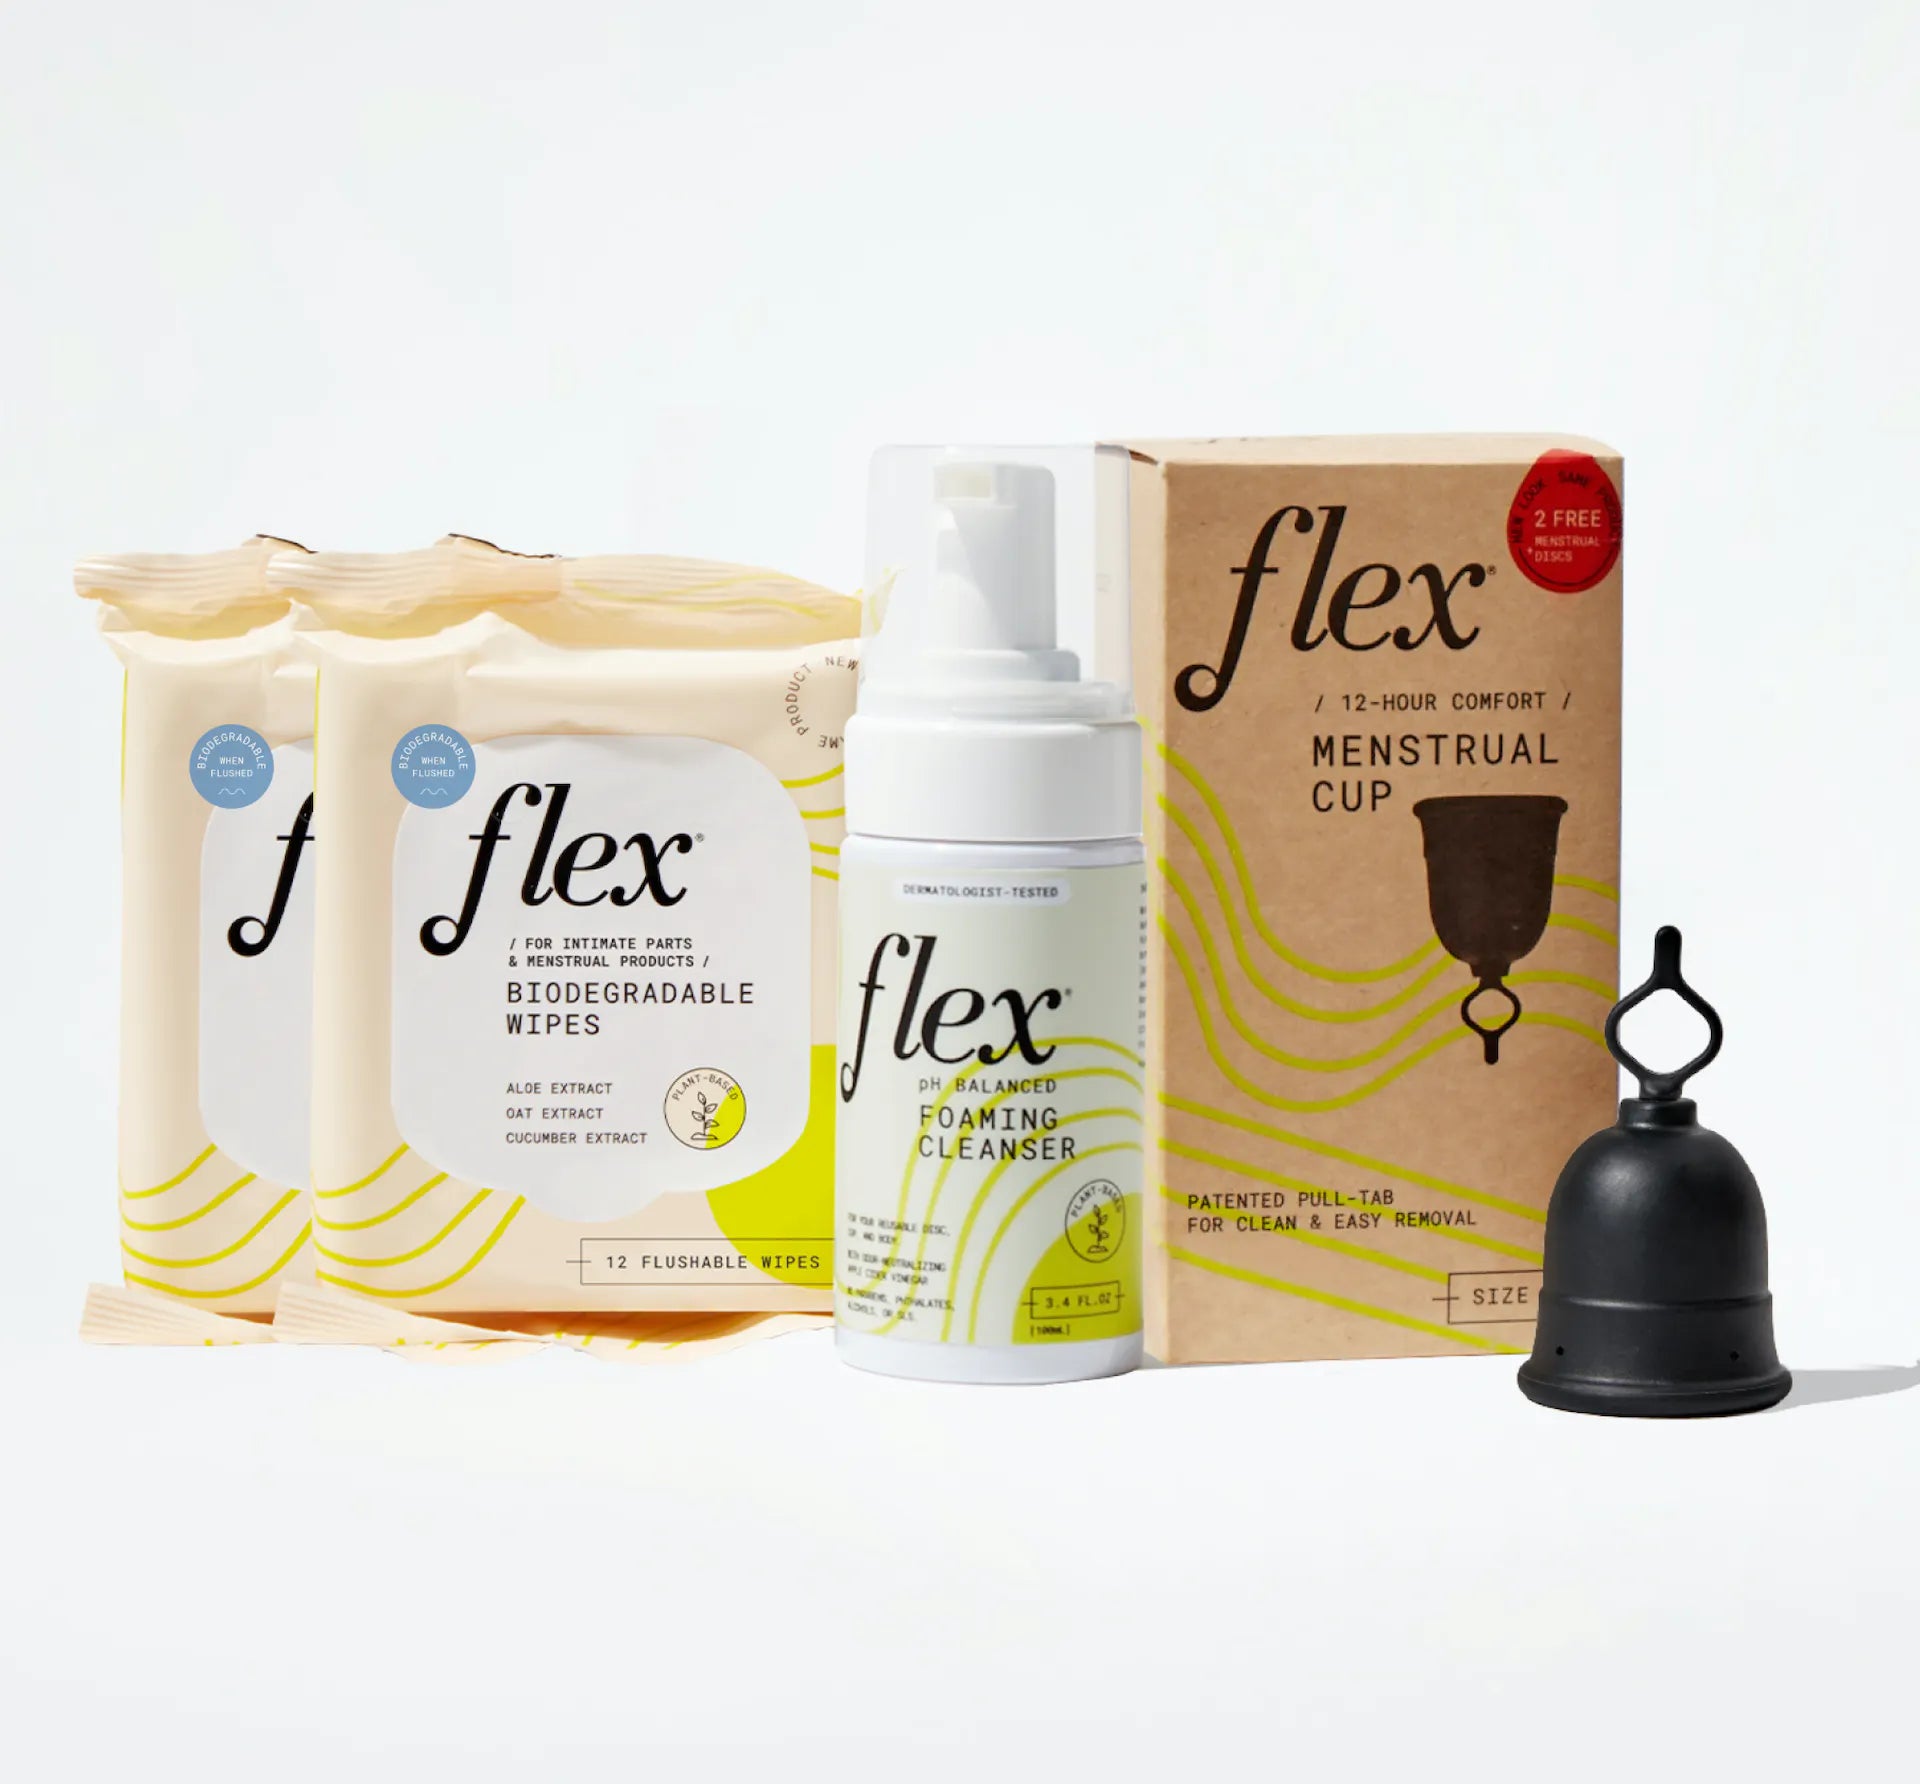 Flex menstrual cup started bundle